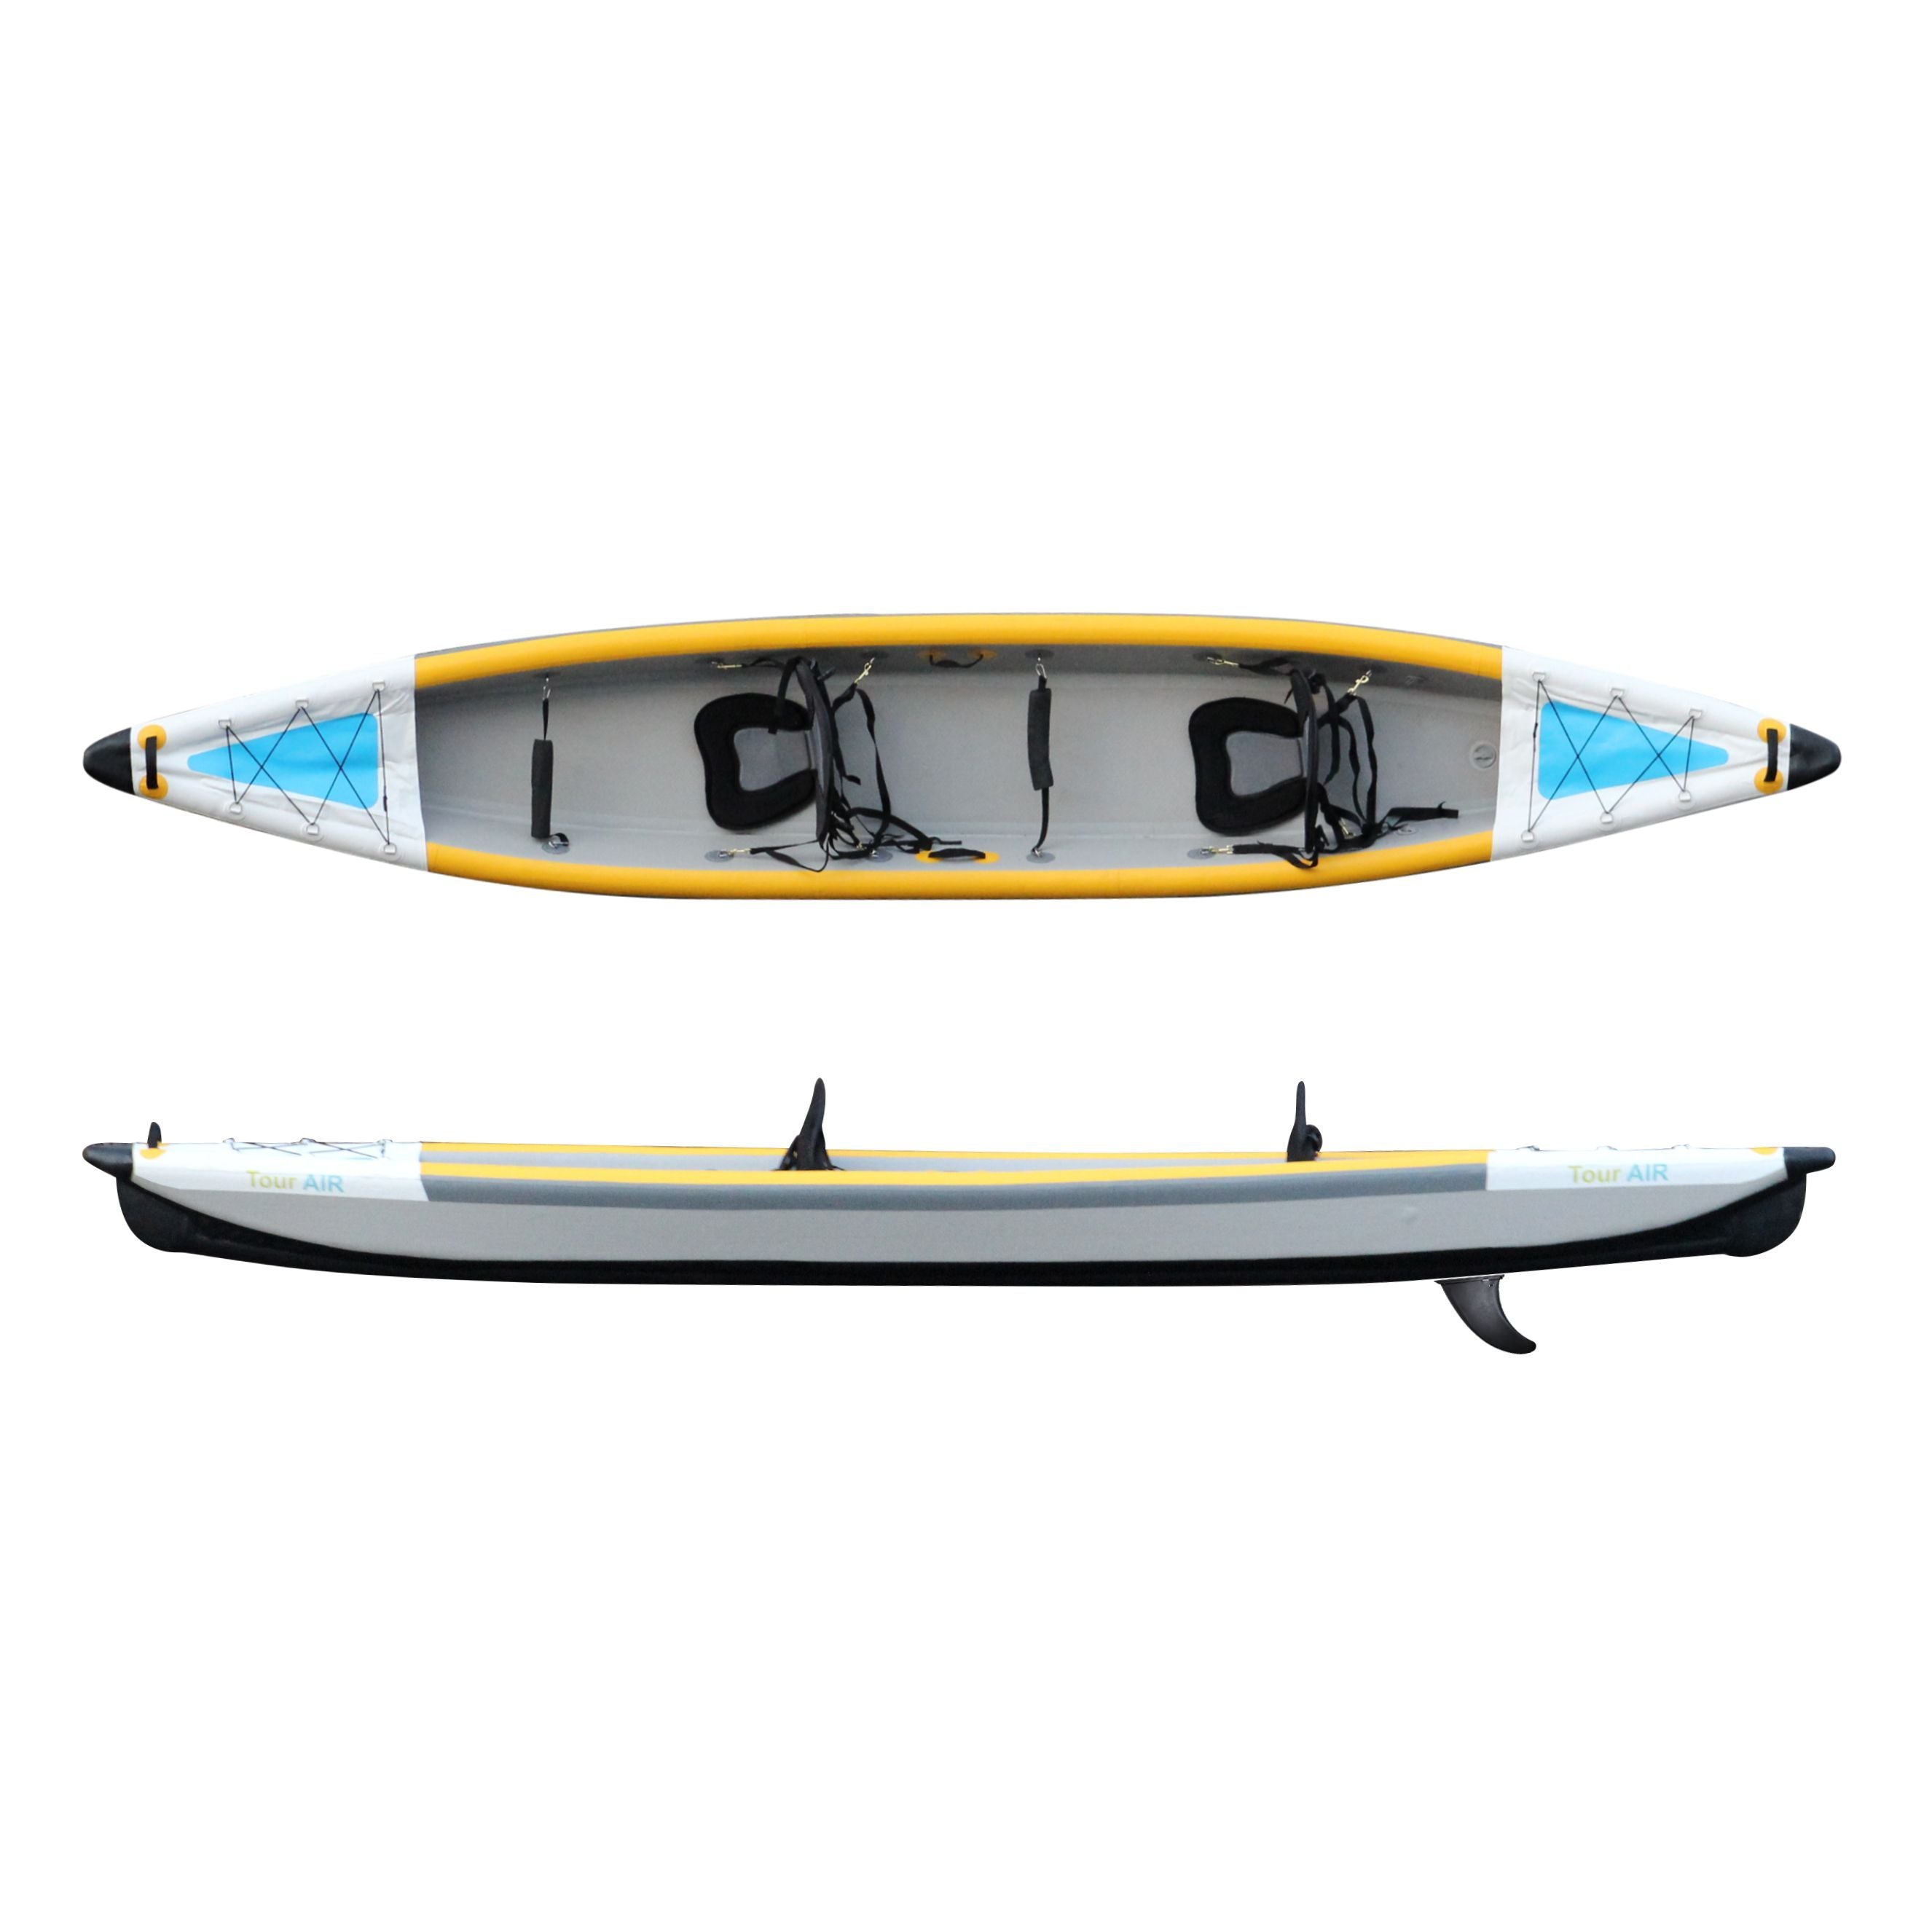 TourAir Double Air Kayak